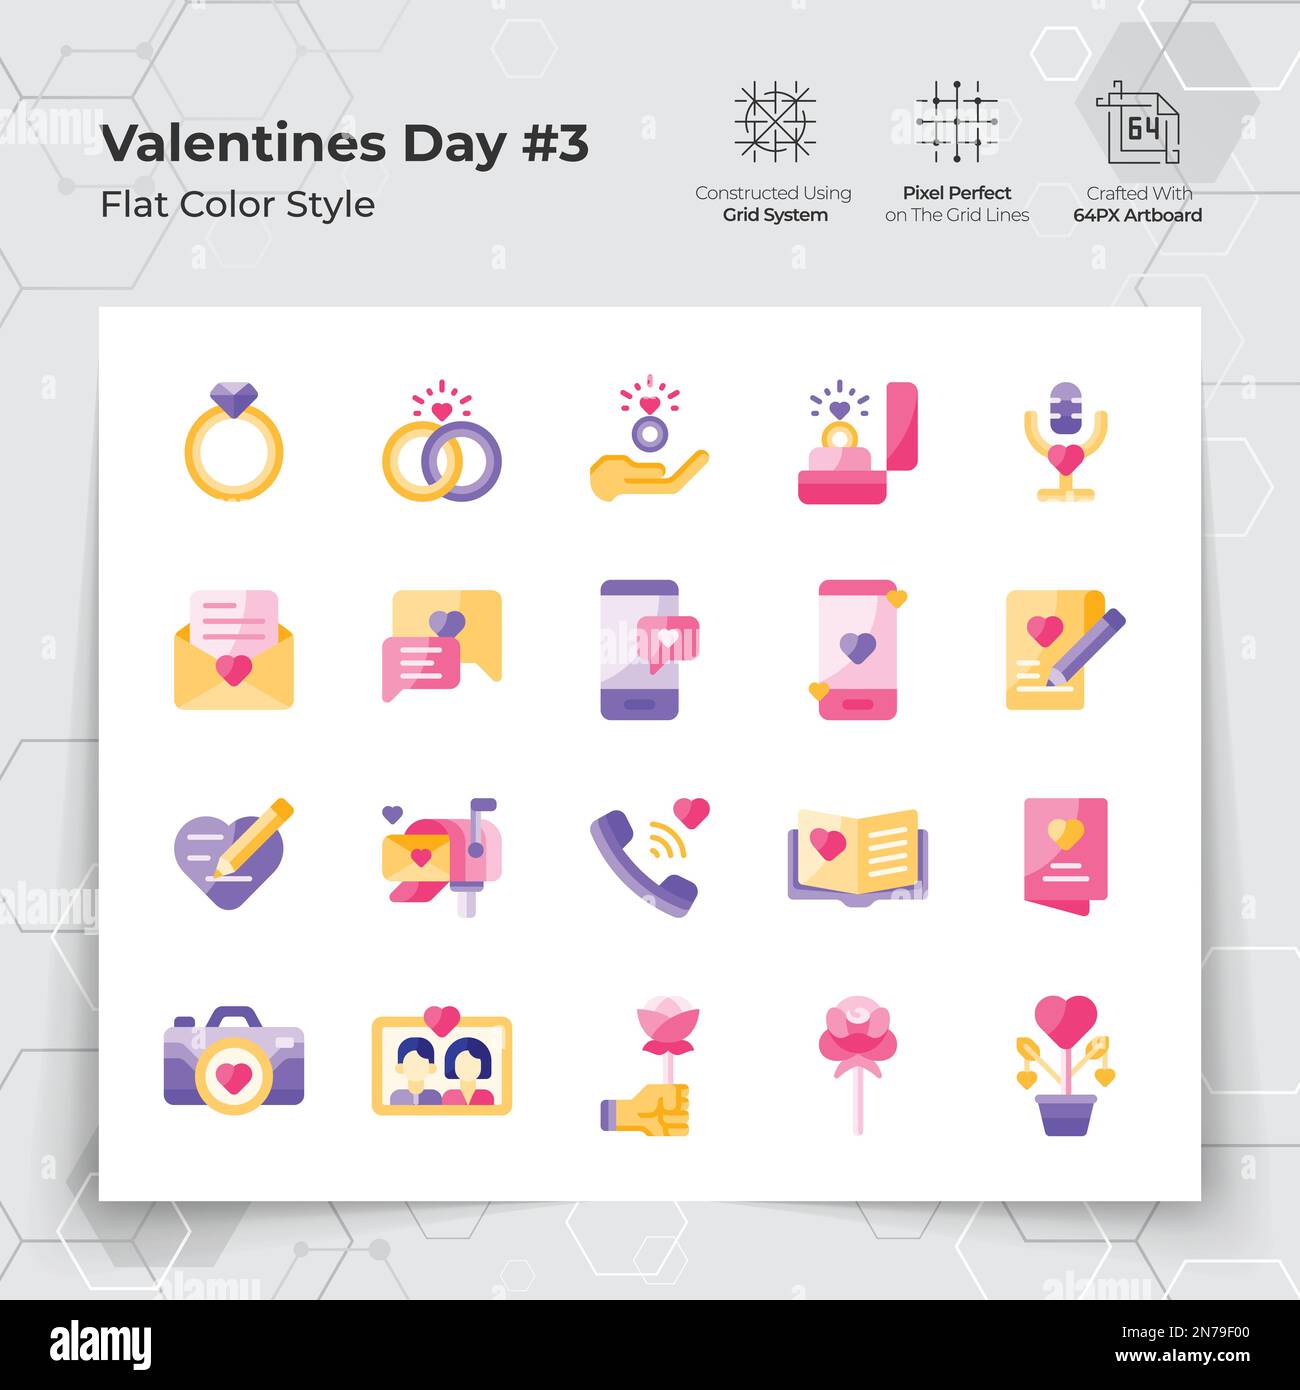 Valentinstag-Ikonen in flachen Farben mit Hochzeitsgeschenken und Chat-Themen. Eine Sammlung von Liebes- und Romantik-Vektorsymbolen für den Valentinstag Stock Vektor